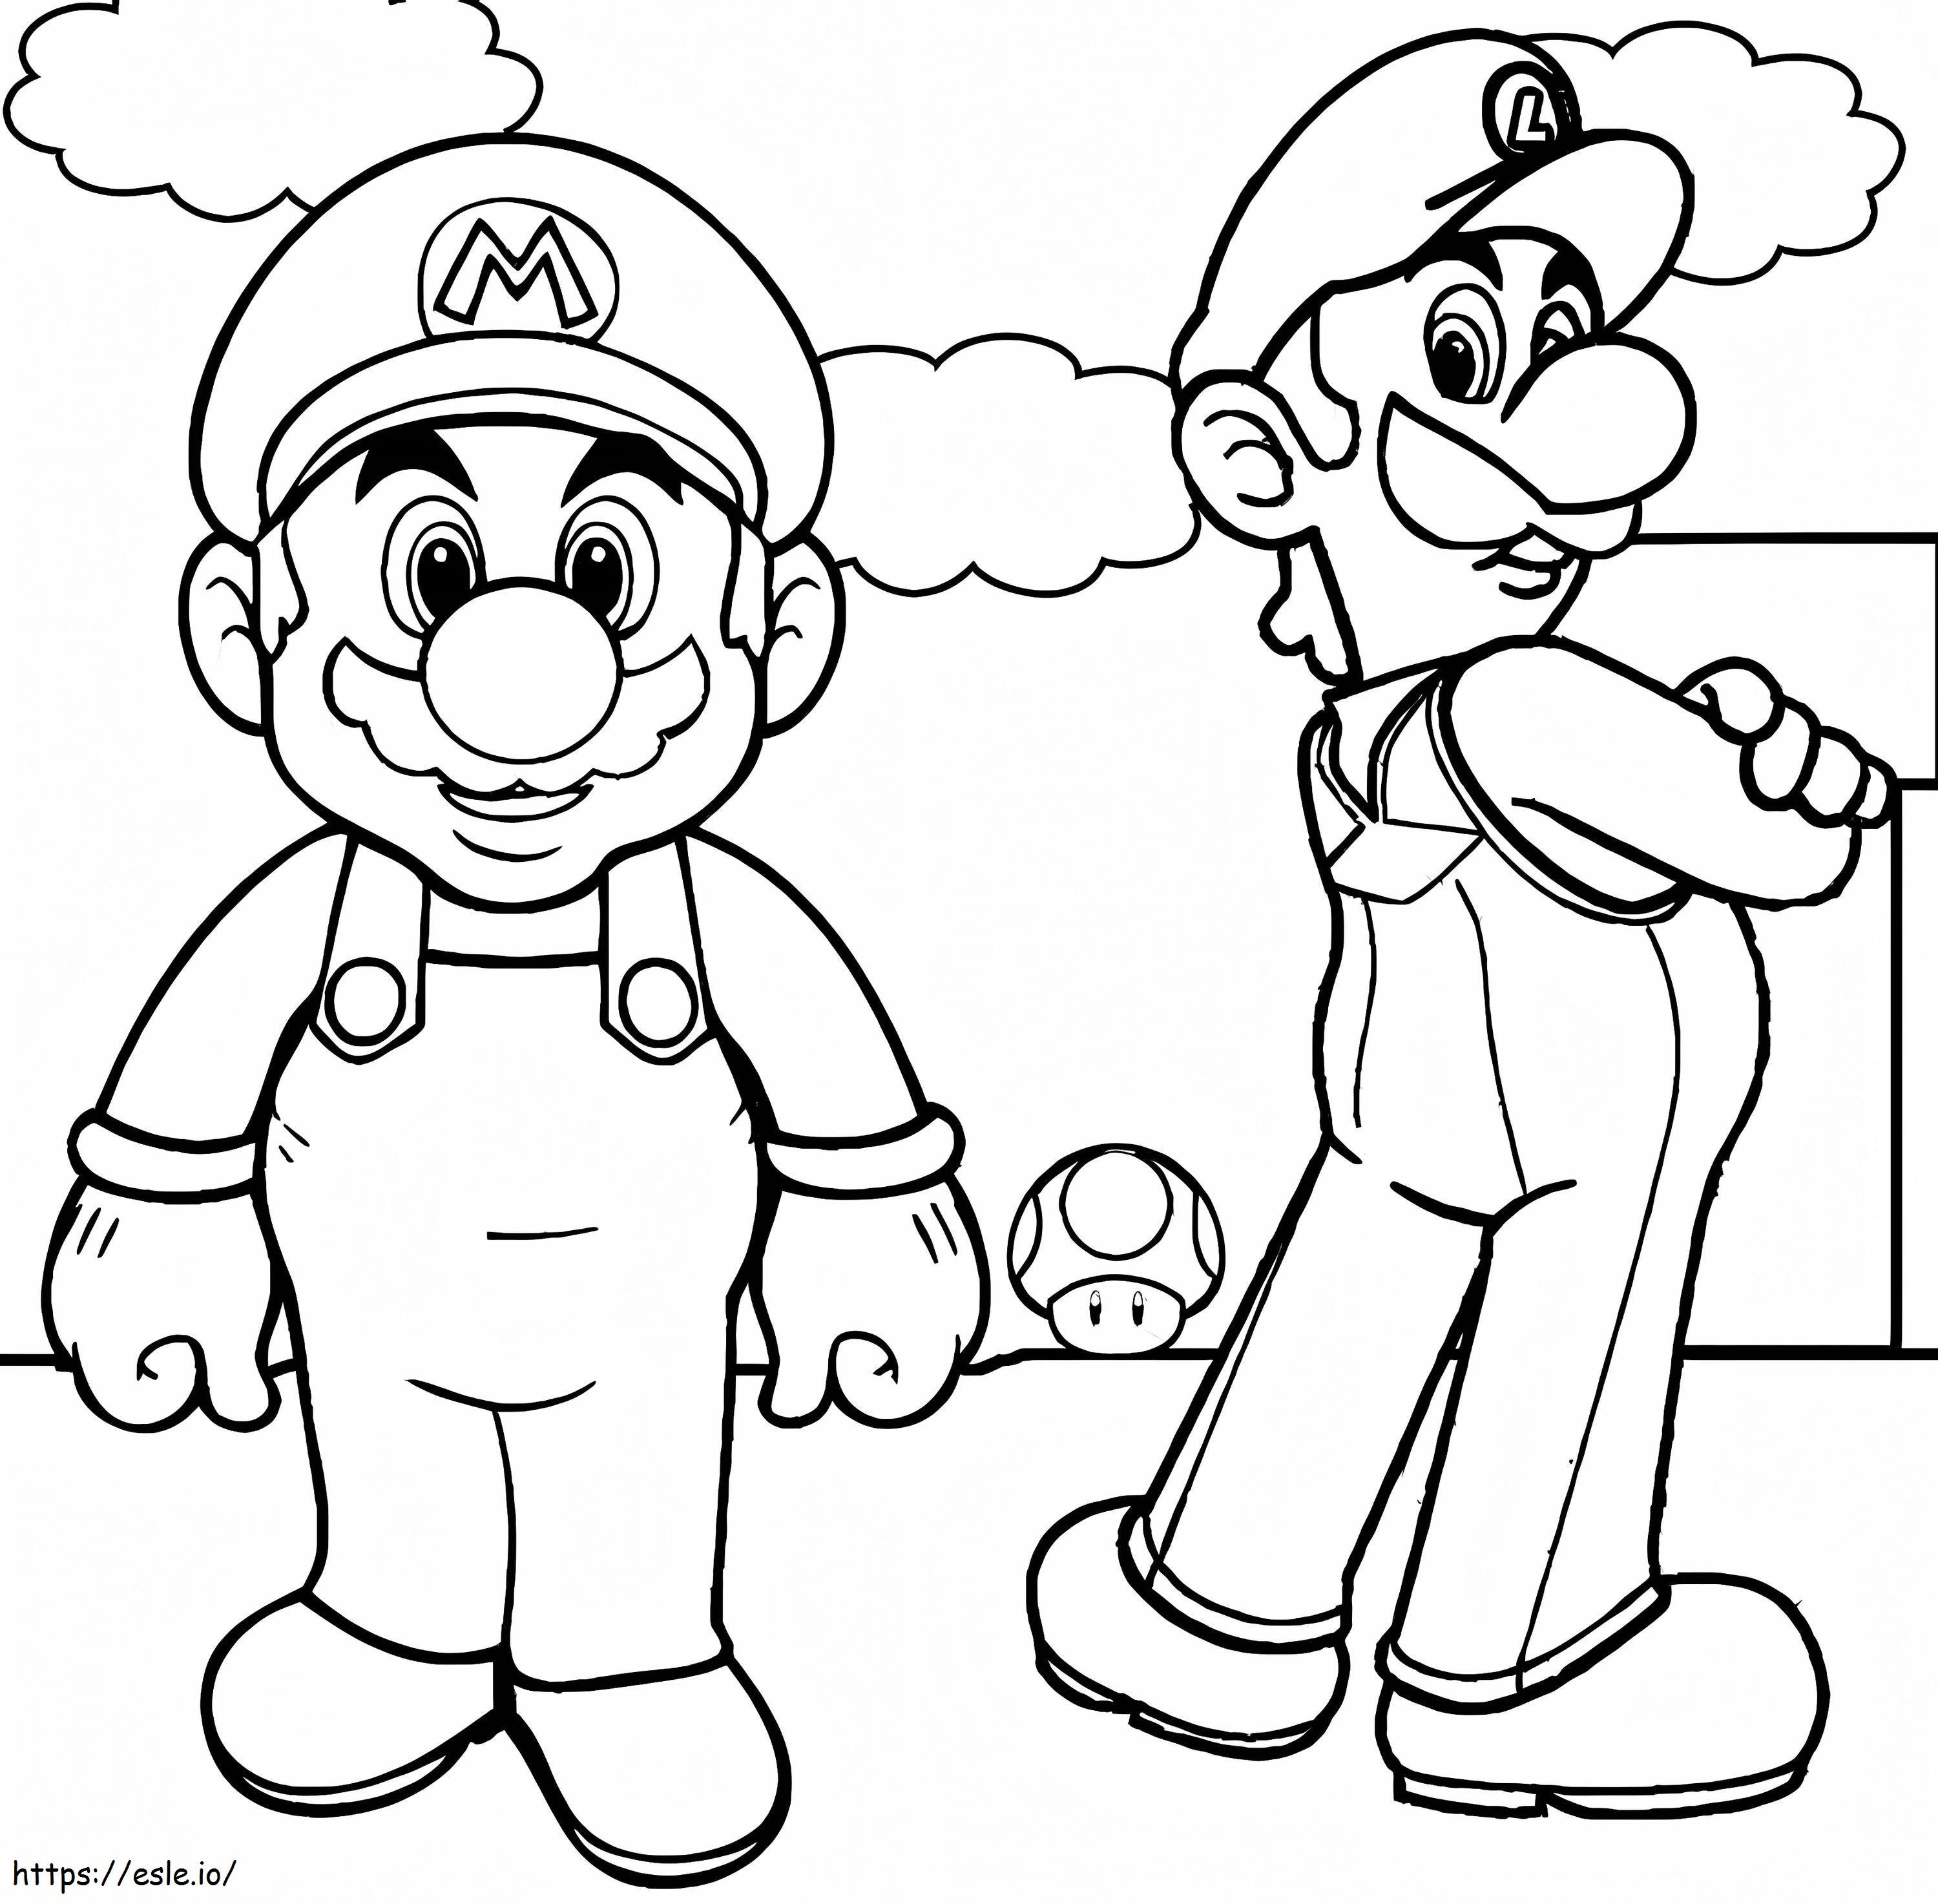 Luigi Basico e Mario da colorare